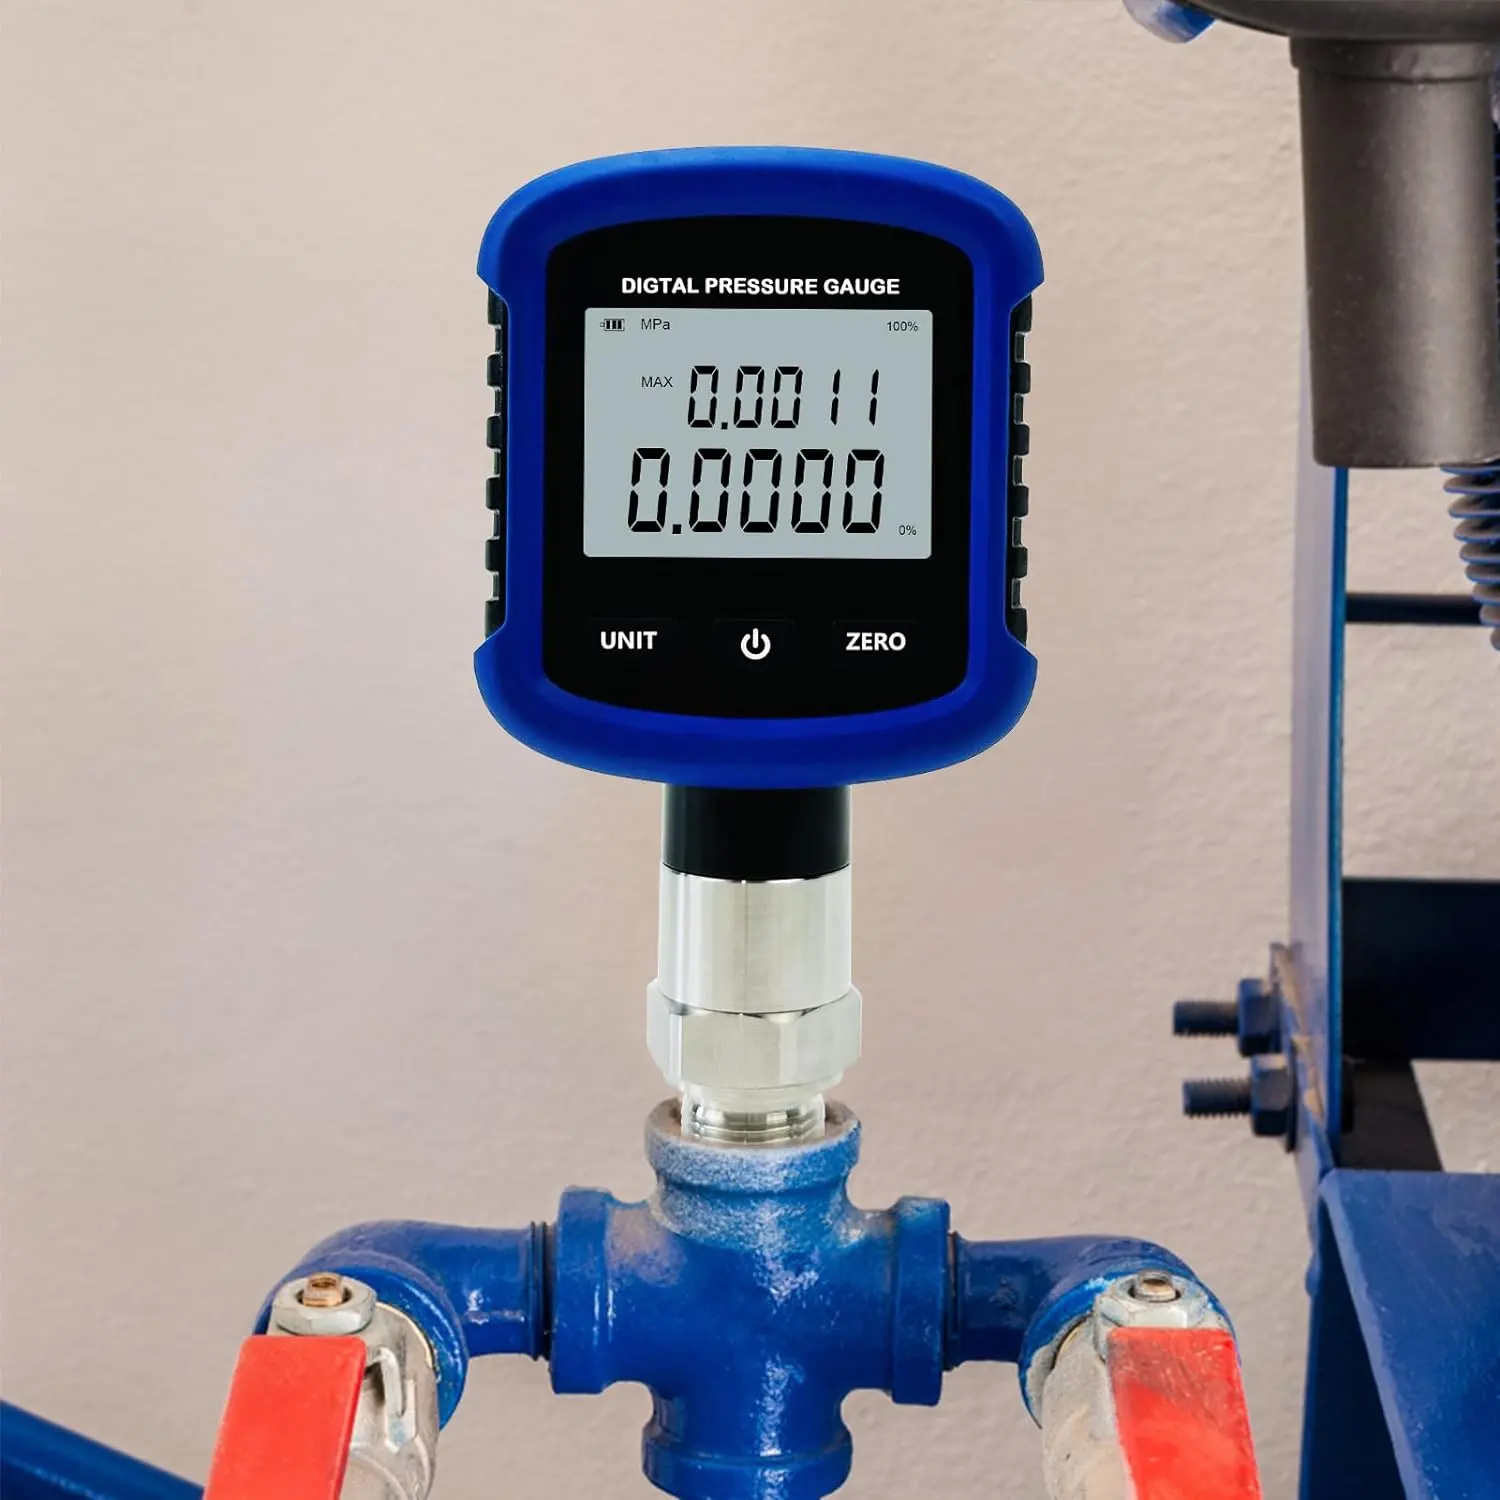 جهاز قياس الضغط الرقمي MD-S281 Datalogger مع غطاء بلاستيكي 0.2% FS 1/4NPT 1/2NPT